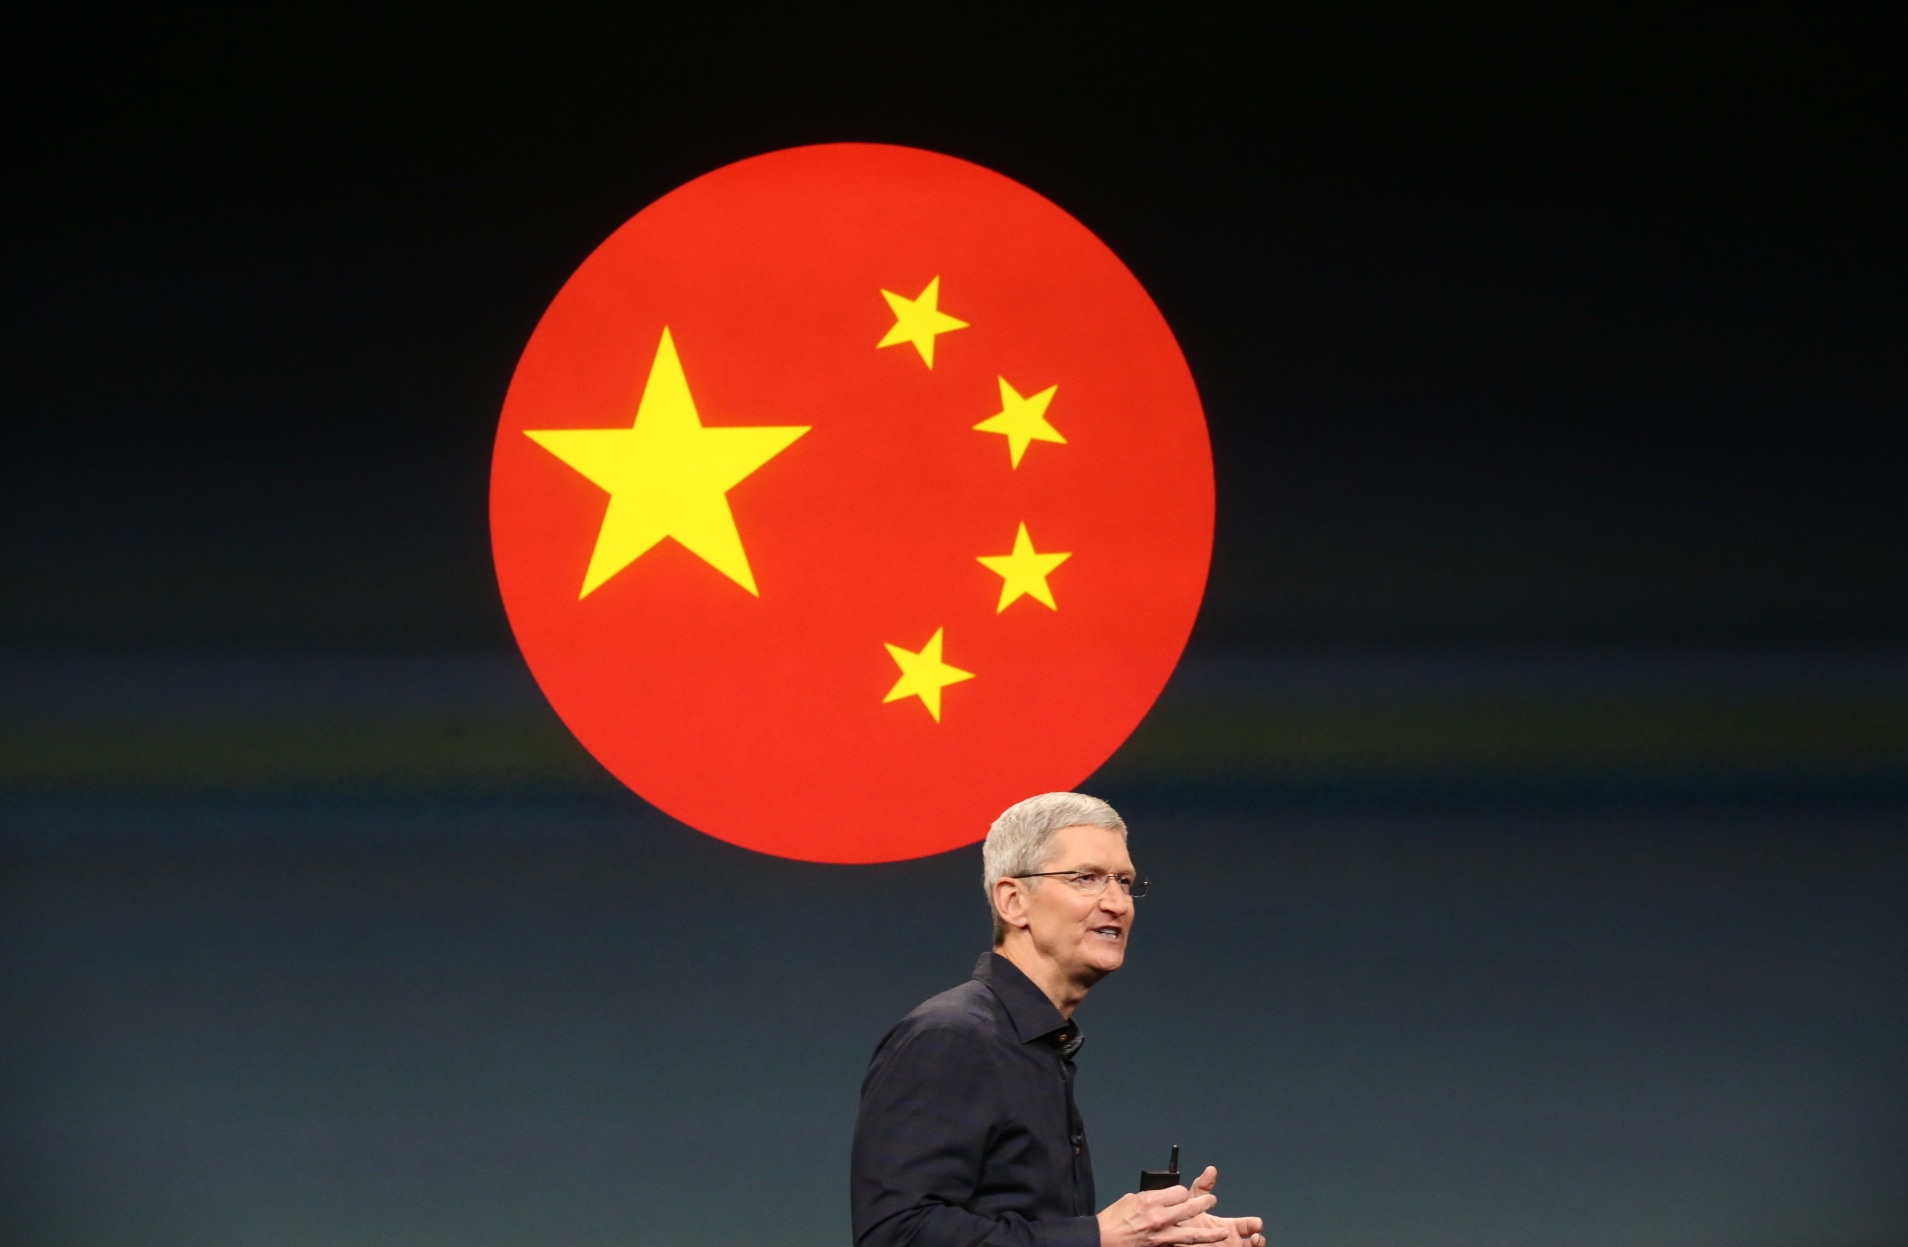 Tim Cook em evento da Apple com a bandeira da China ao fundo